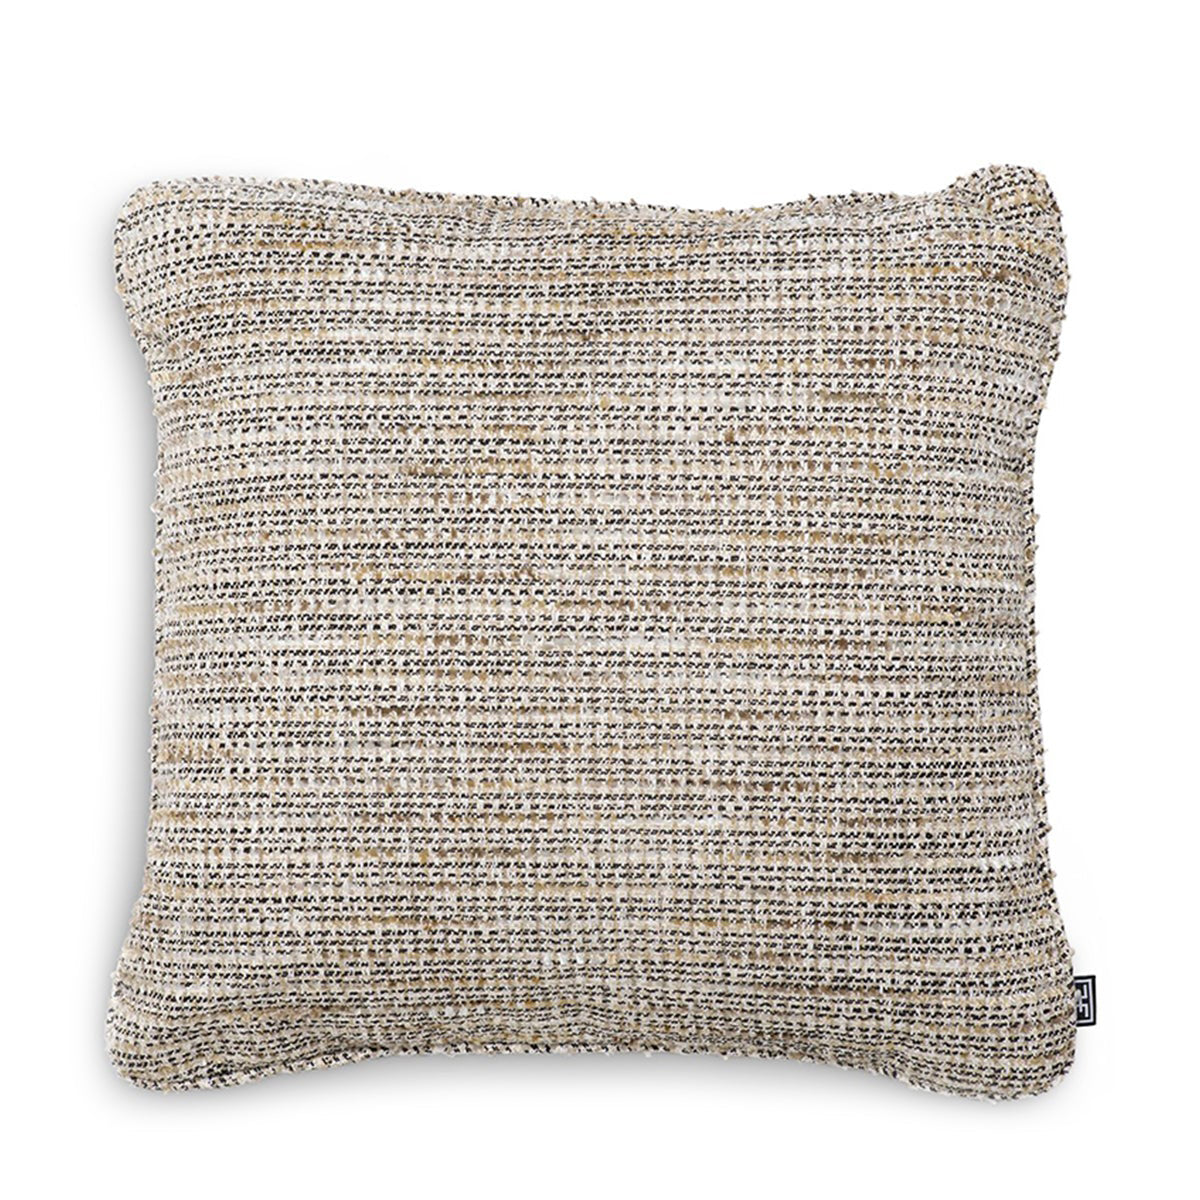 eichholtz cushion mademoiselle square small decorative pillows & cushions 